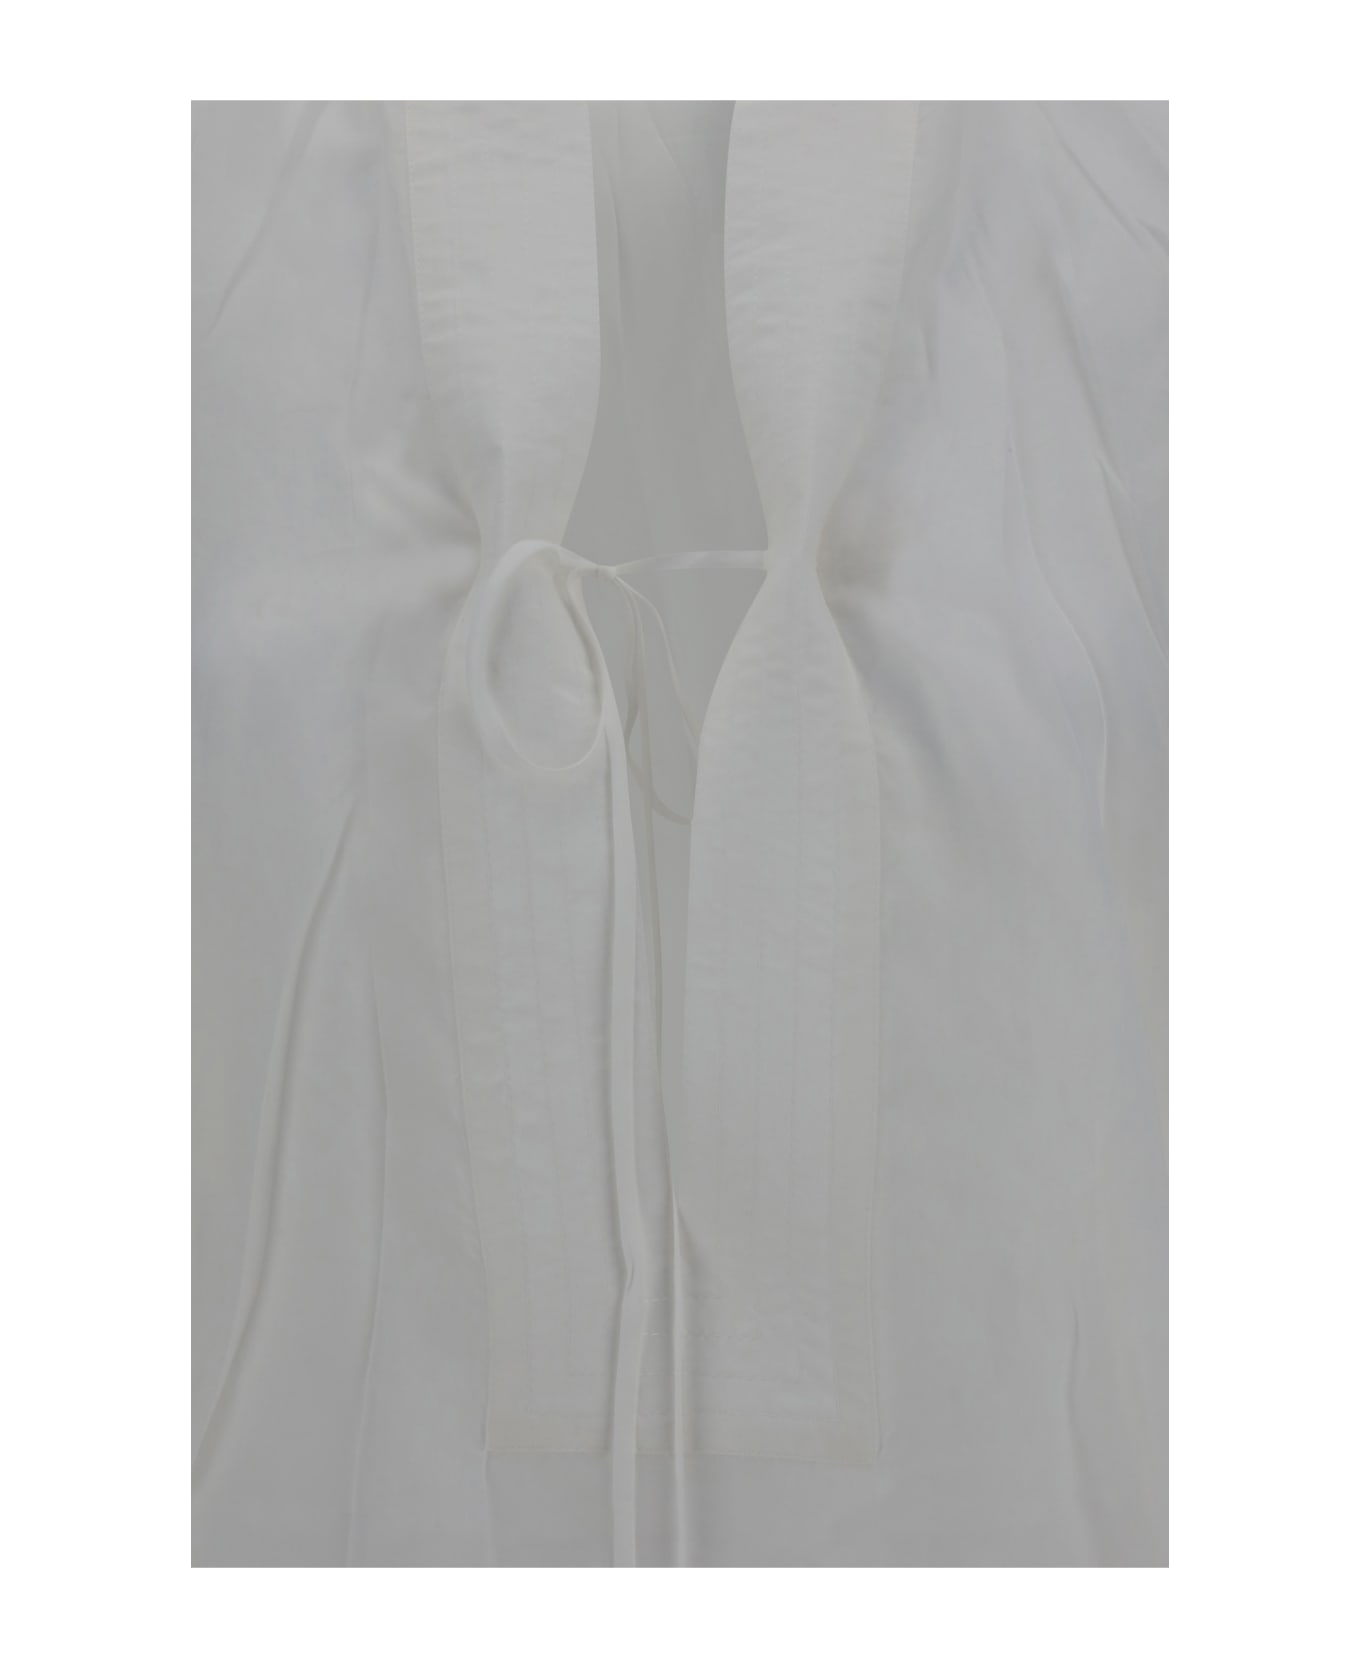 Ferragamo Tunic Shirt - White